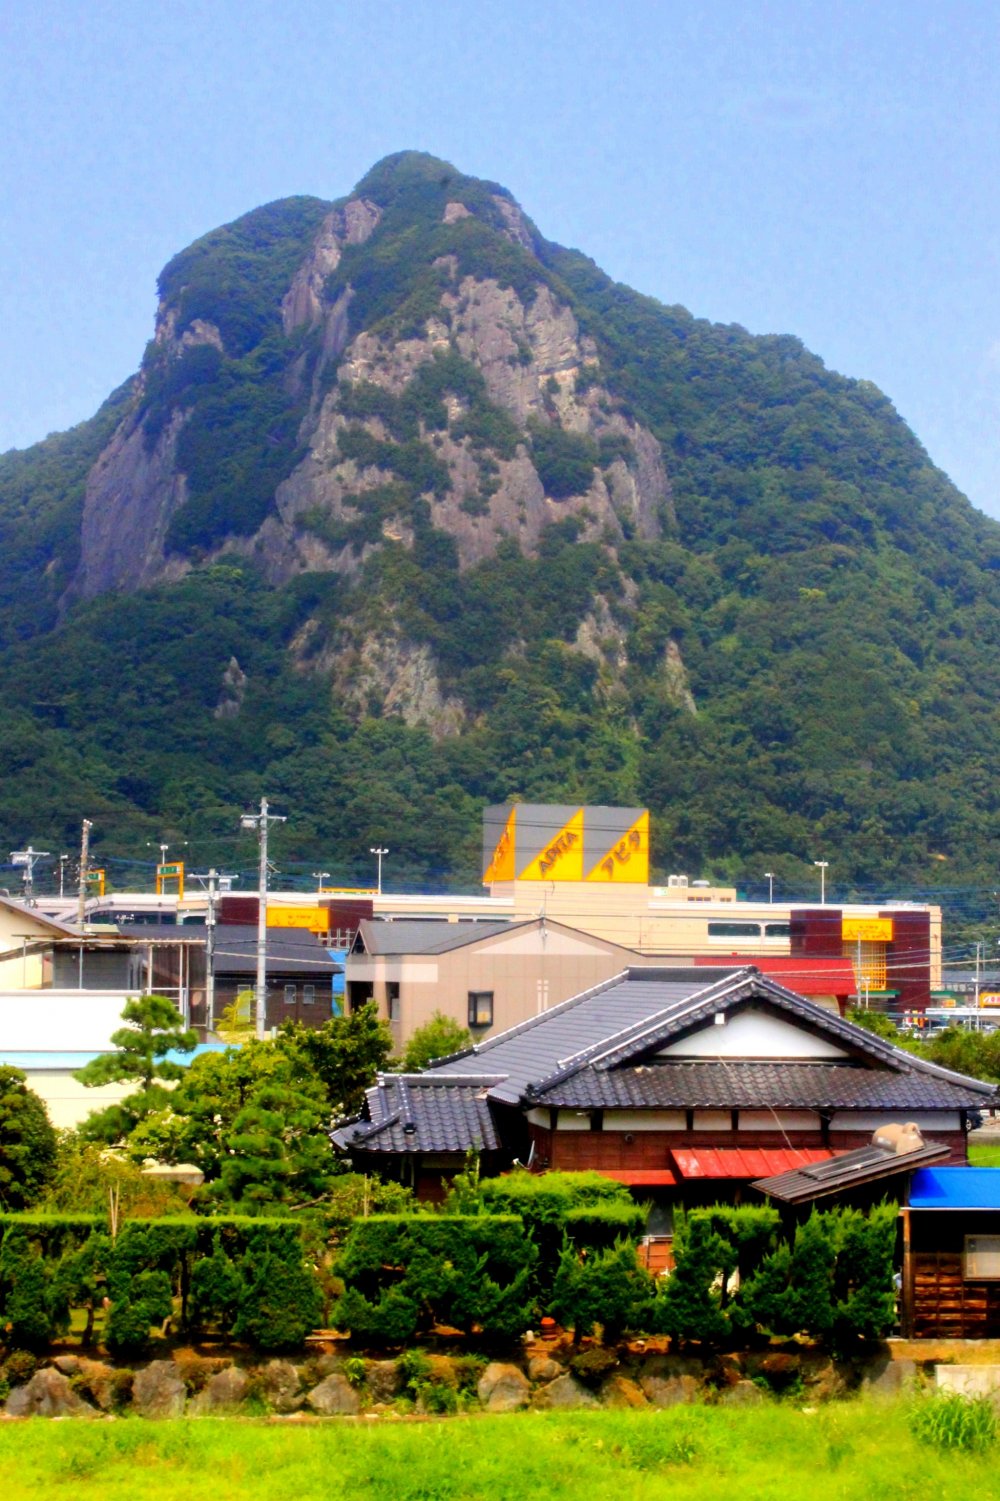 Menikmati pemandangan hebat daerah perumahan dan pedesaan semenanjung Izu dari kereta